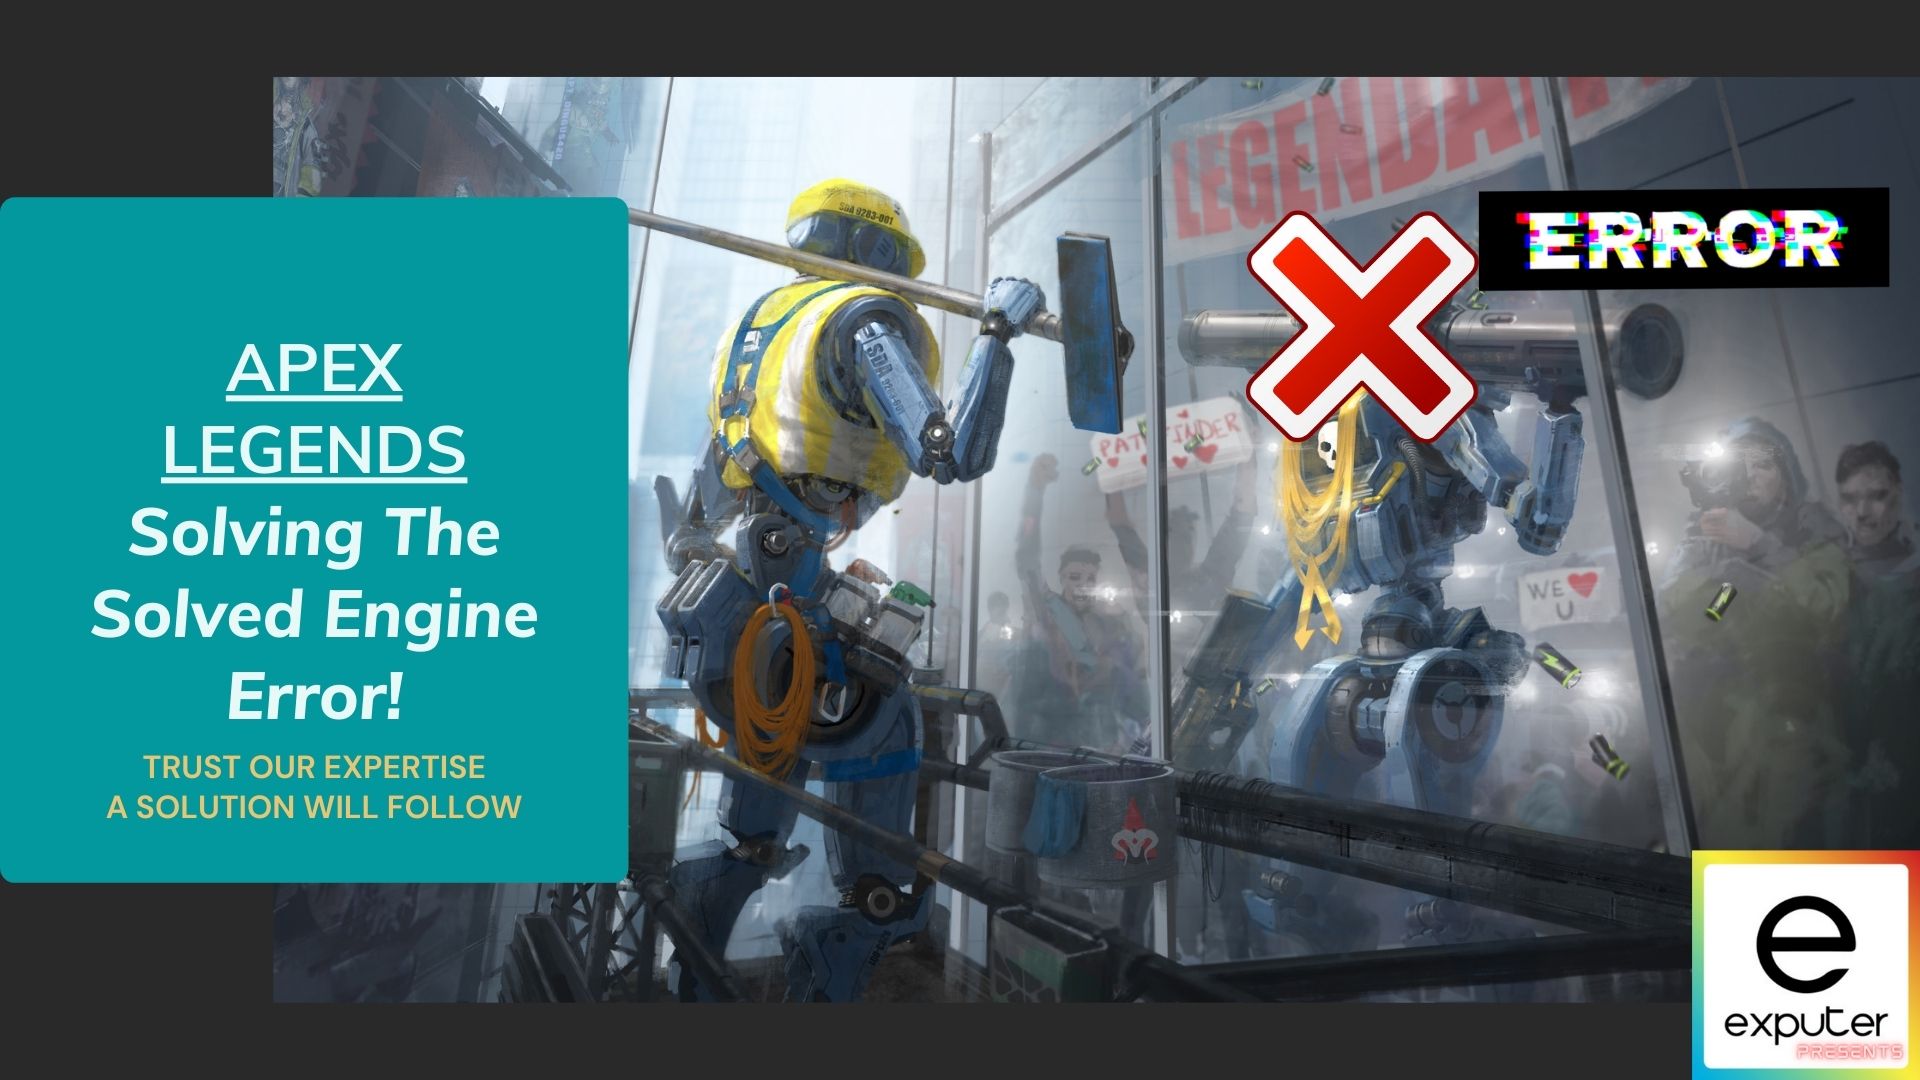 Holen Sie sich hilfreiche Tipps zur Fehlerbehebung des Apex Legends Engine Error.
Finden Sie heraus, was den Apex Legends Engine Error verursacht.